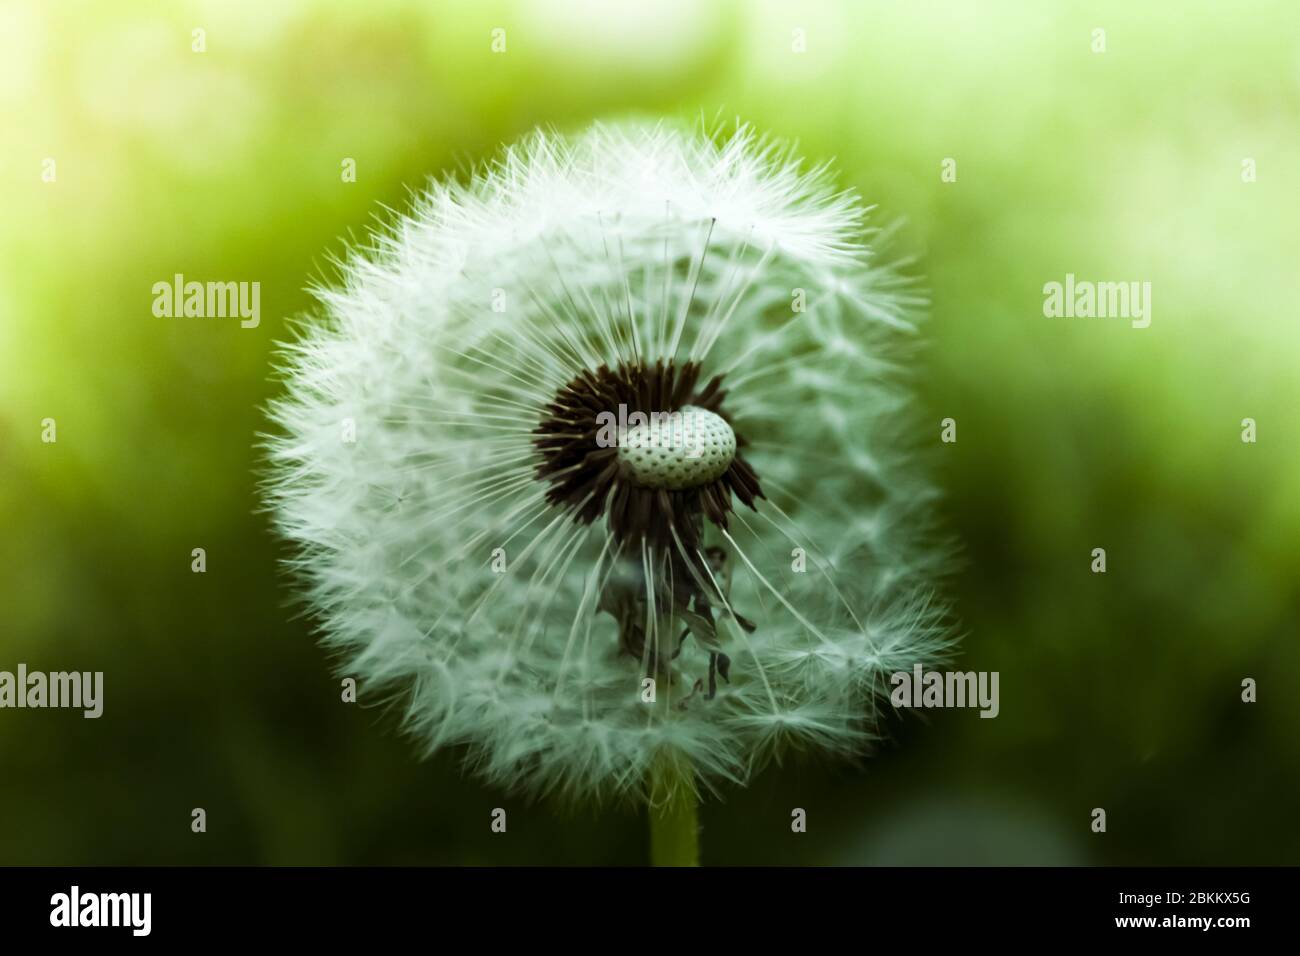 Close up wet dandelion over shiny background Stock Photo